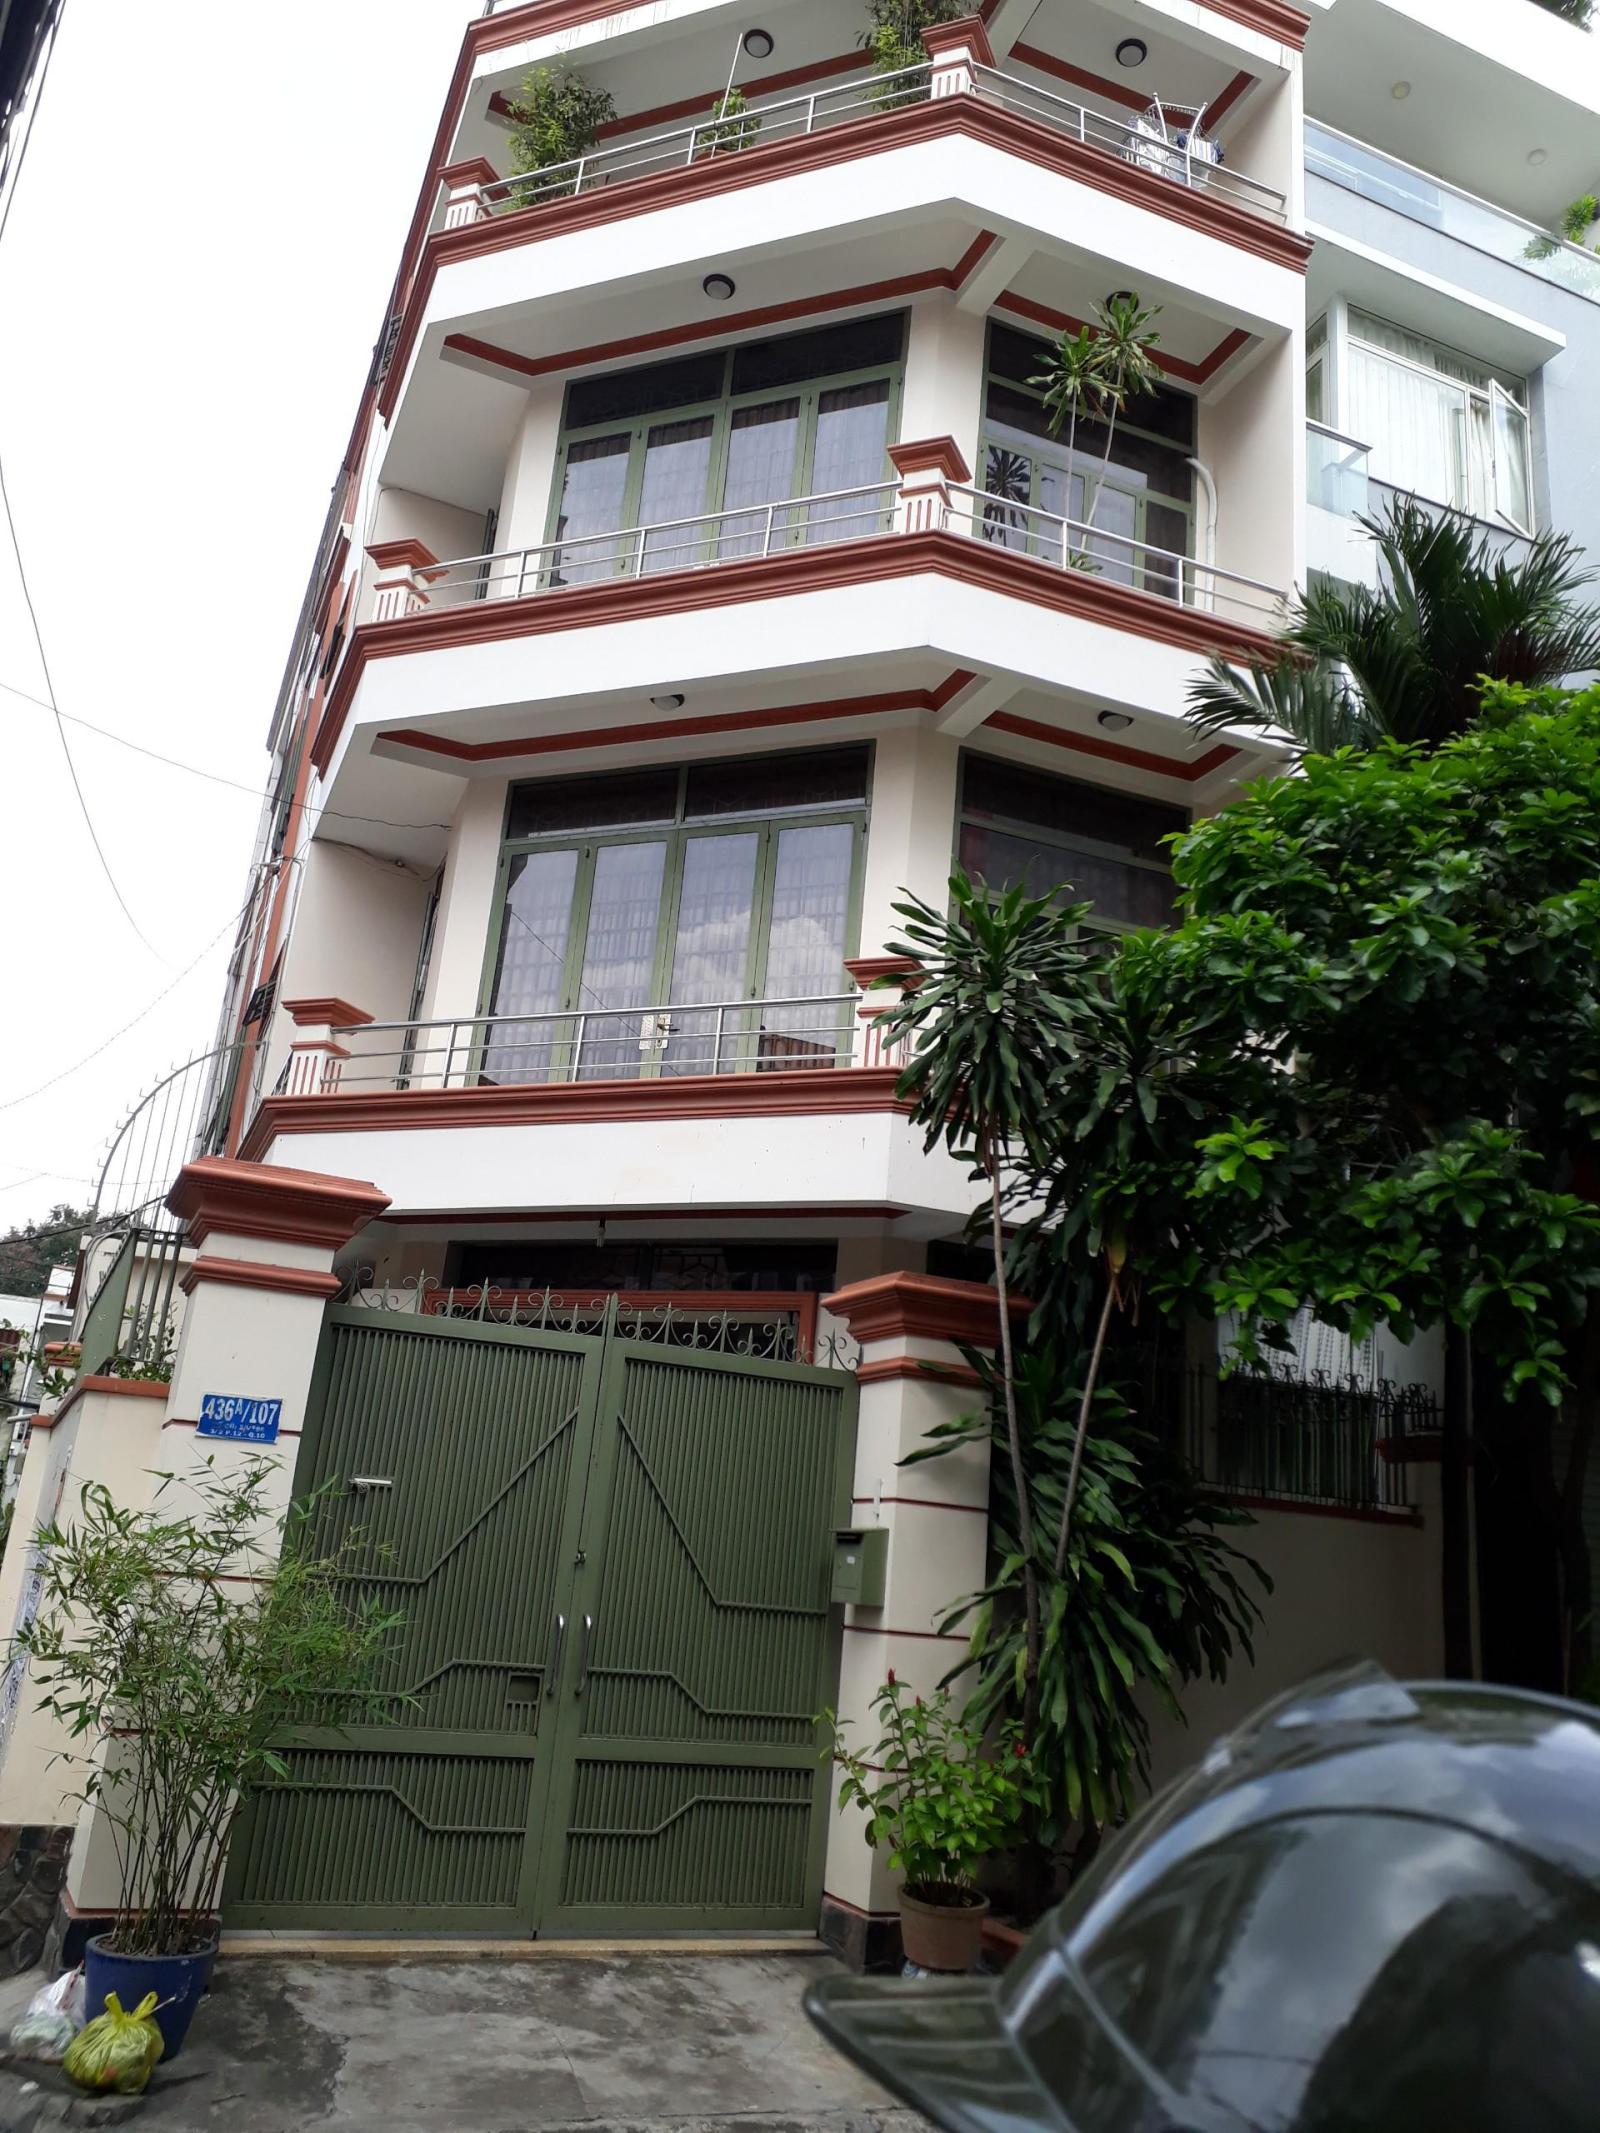 Bán nhà đường Nguyễn Trãi, Phường Bến Thành Quận 1, DT 4x20m, 5 tầng, HDT 88 tr, giá 45,5 tỷ